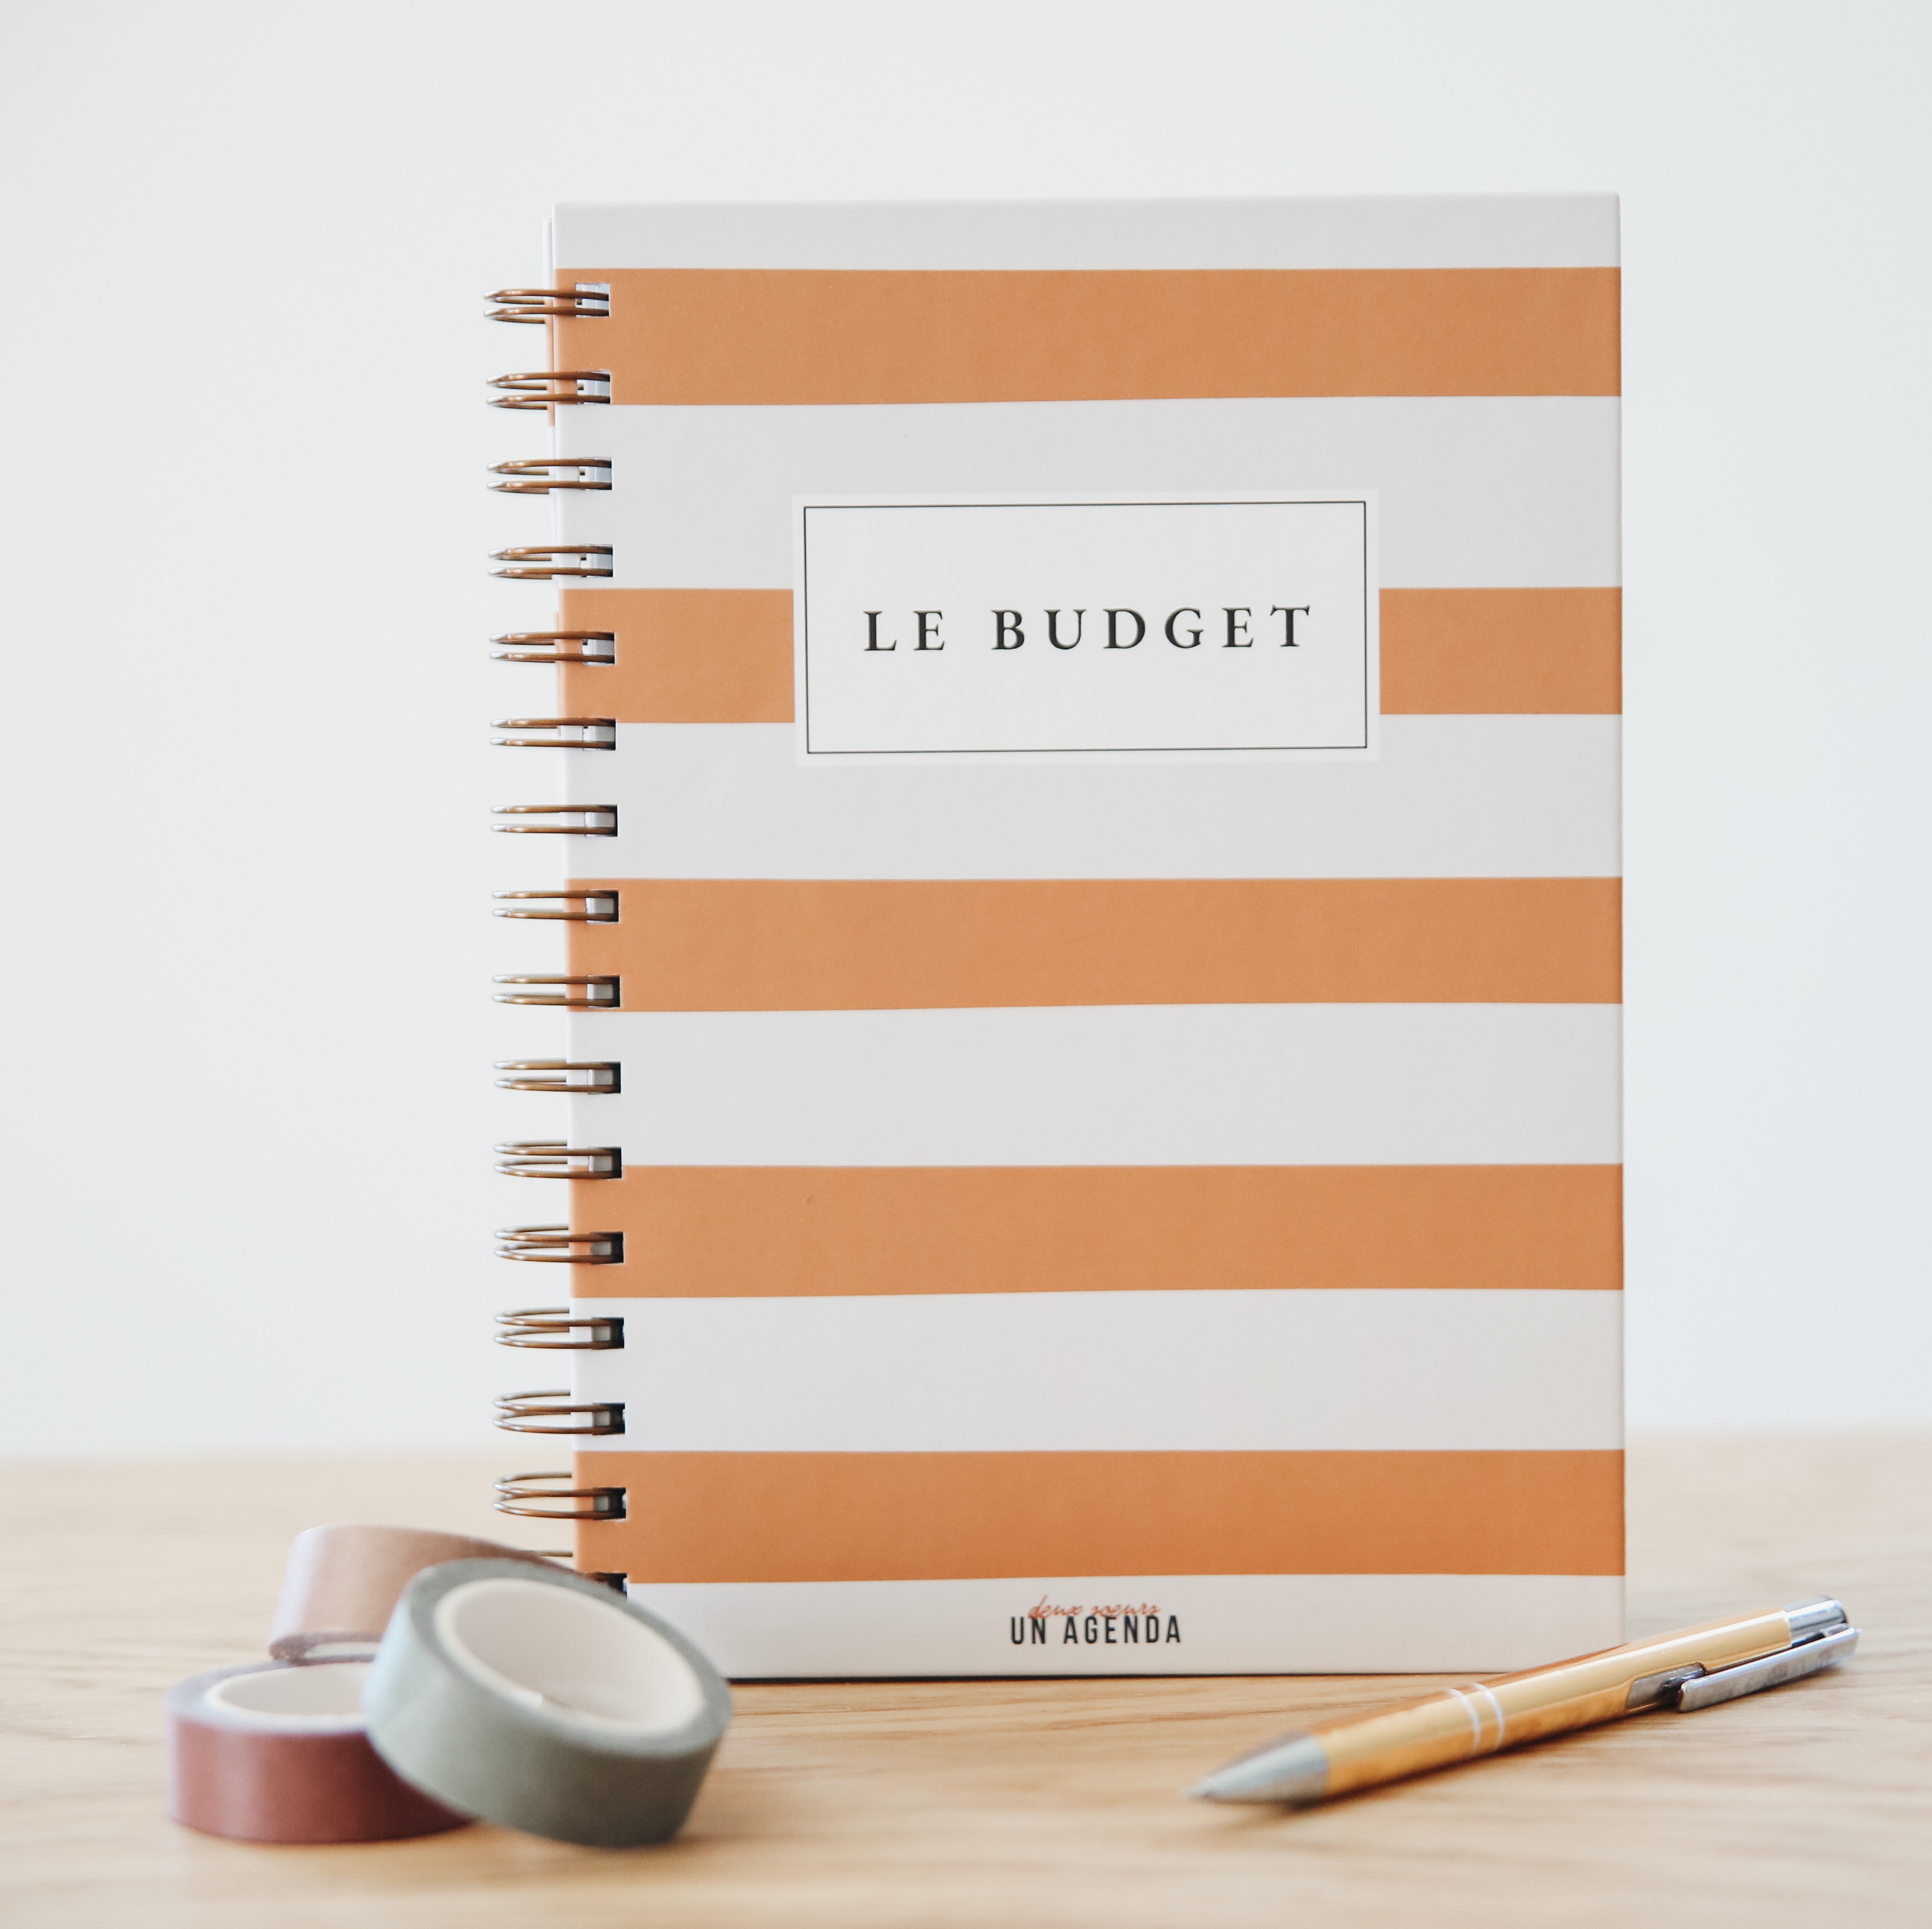  Carnet de budget: pour gérer et noter les dépenses